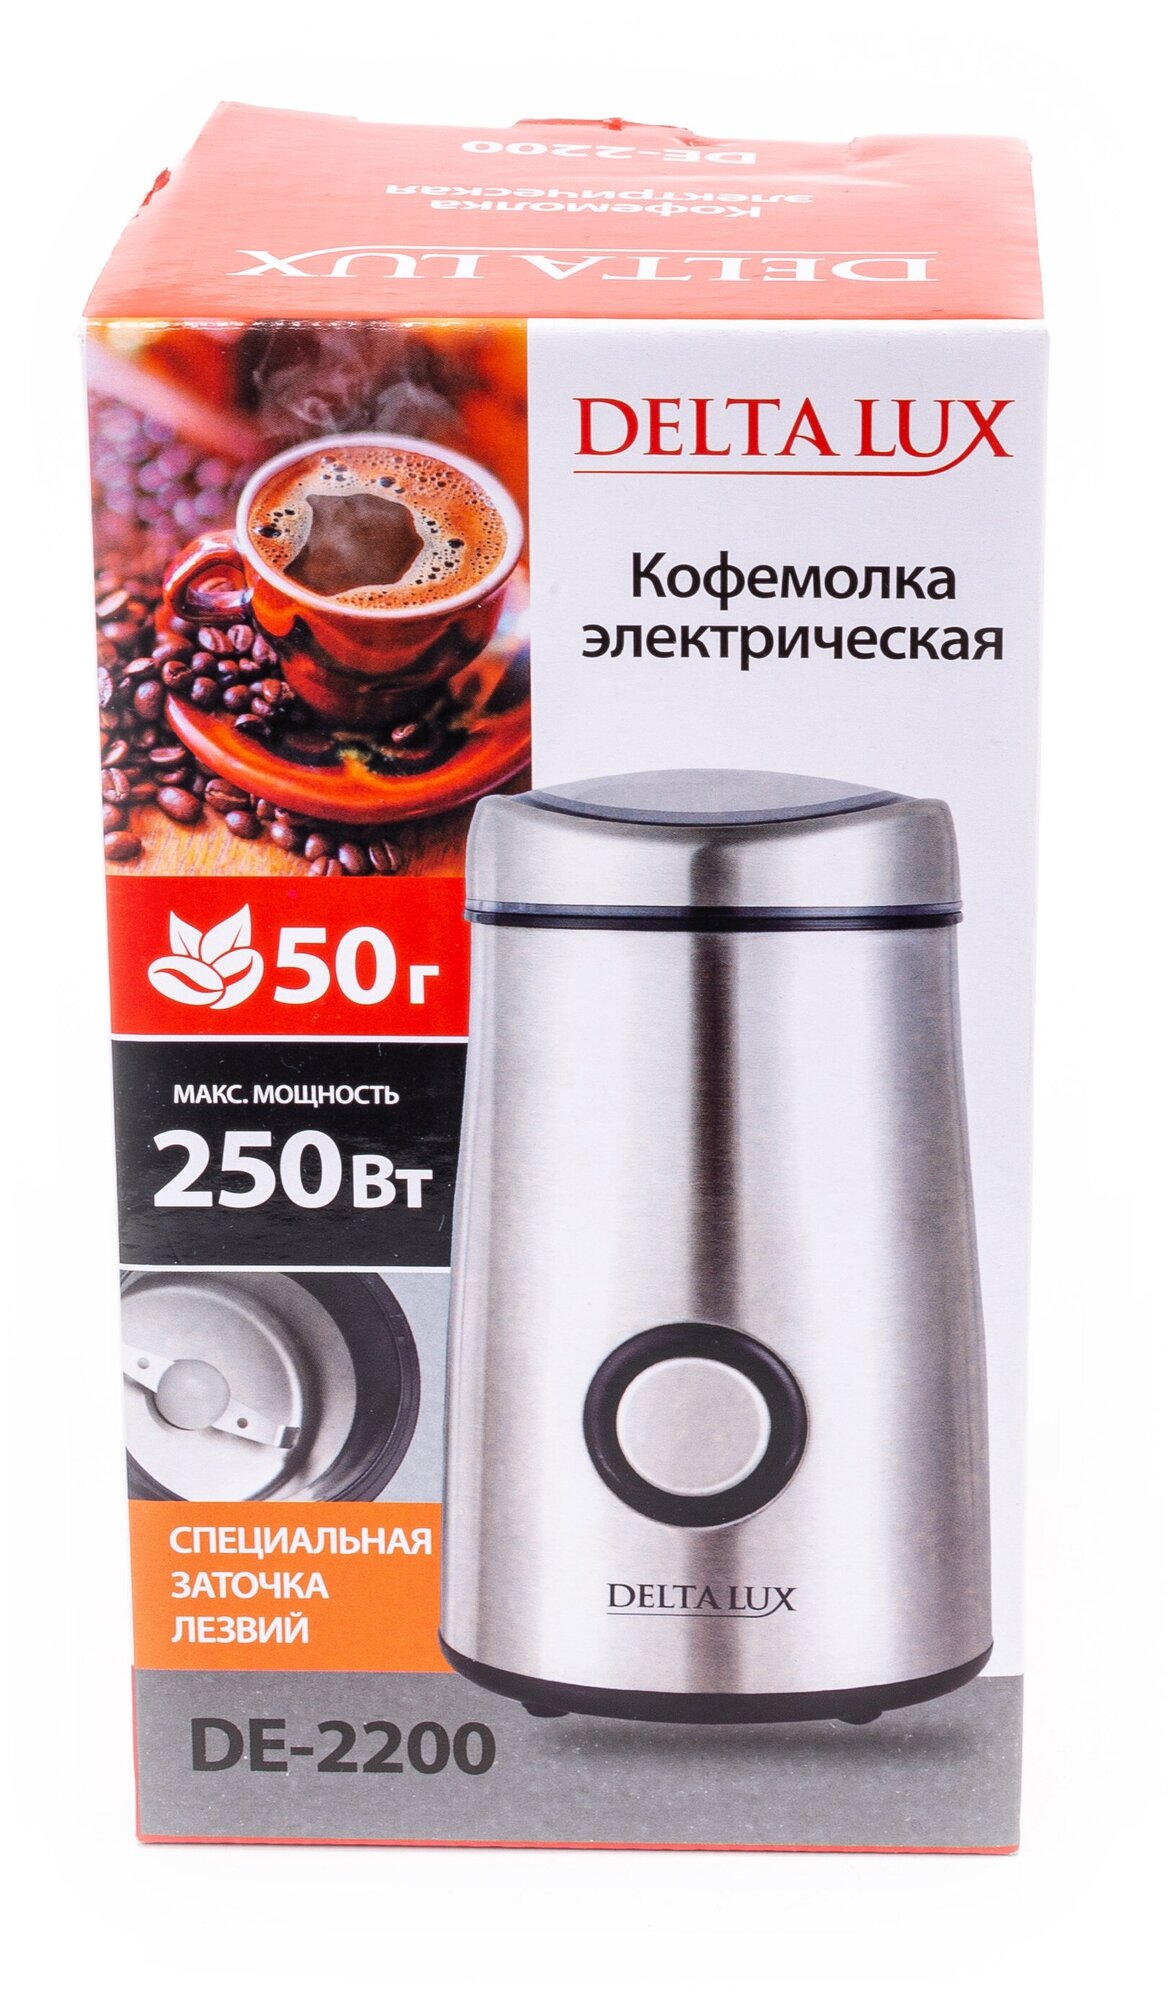 Кофемолка DELTA LUX DE-2200 нерж. Корпус :250Вт, емкость для зерен 50г - фотография № 2